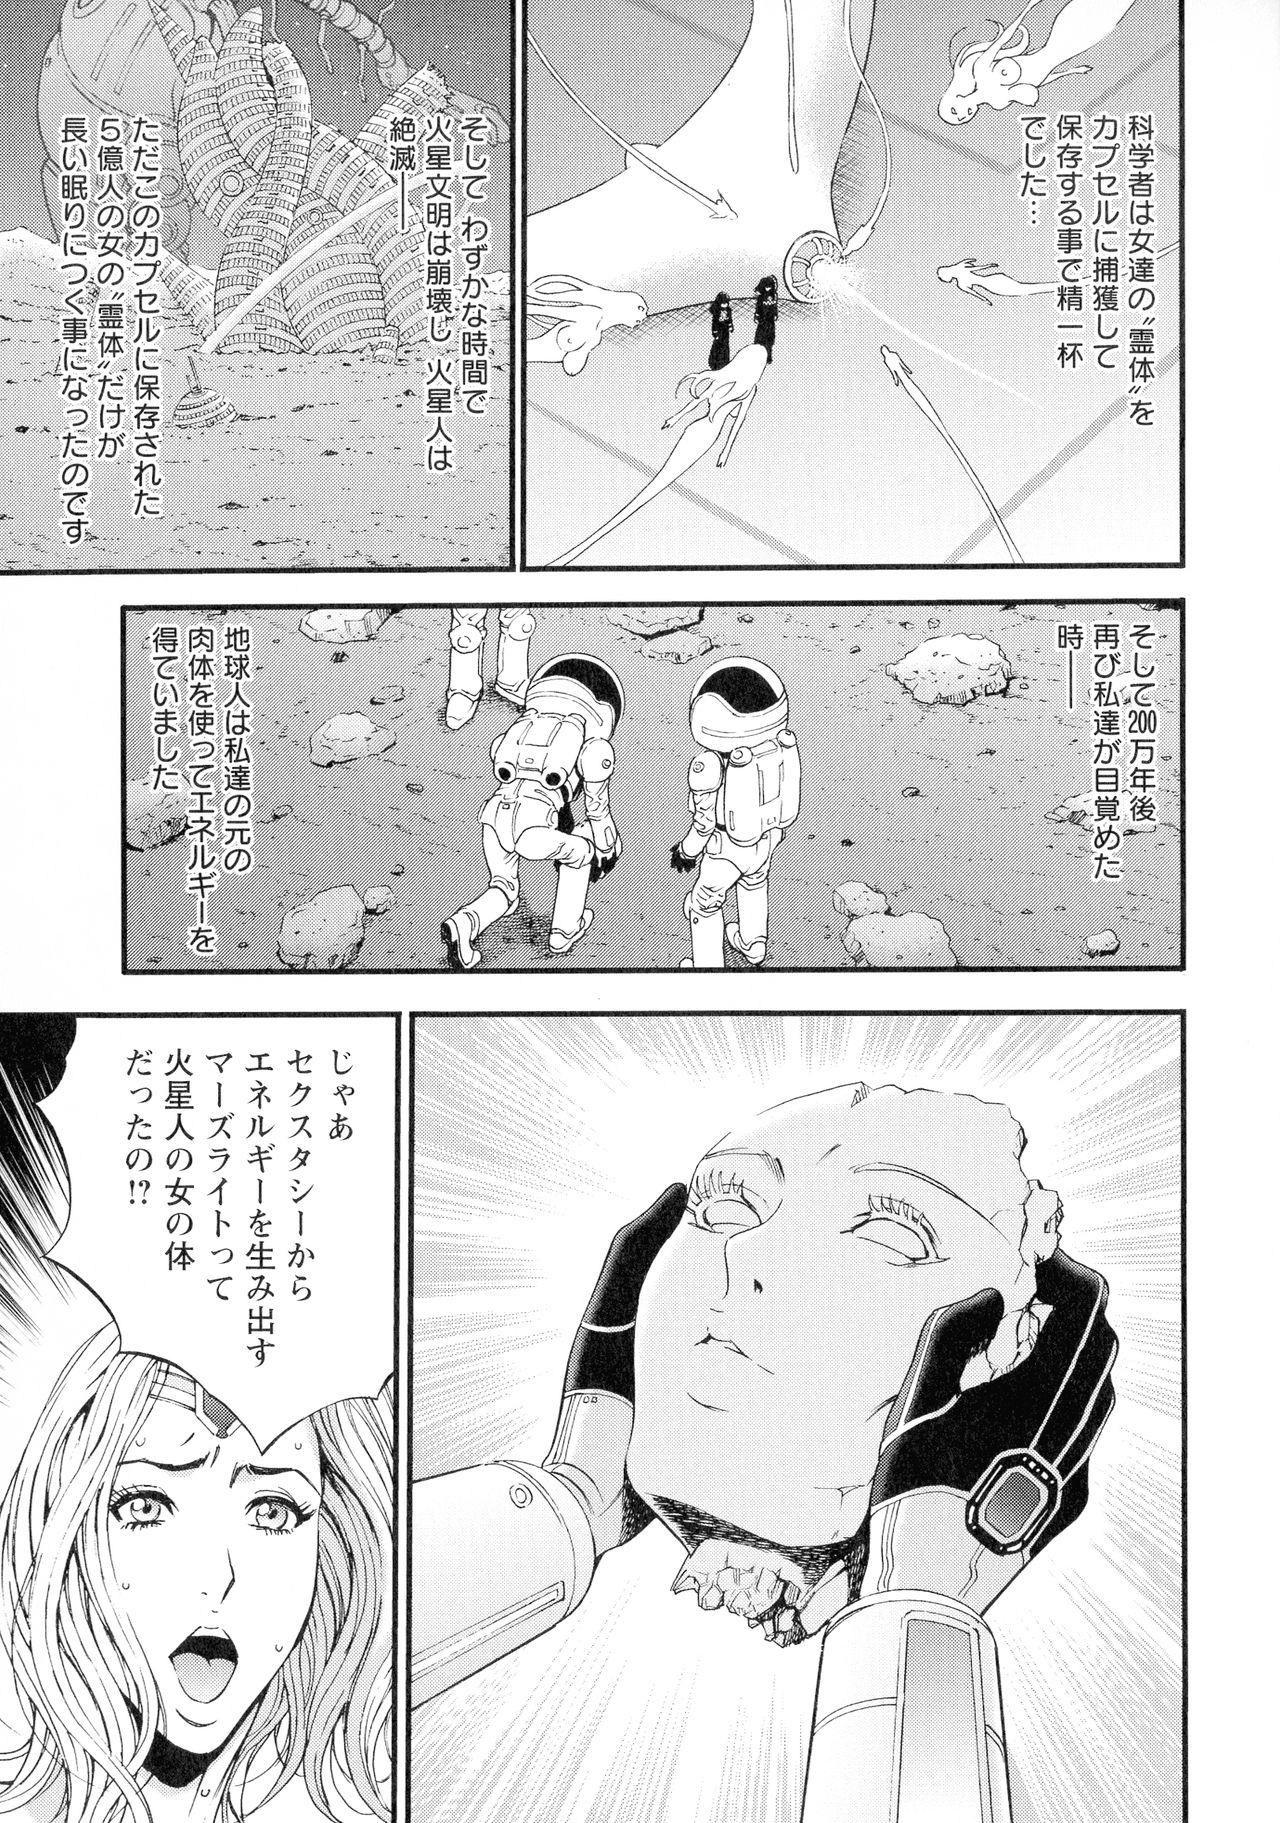 [Nakashima Chosuke] Seireki 2200-nen no Ota 3 Zetchou Time-Slip Girl 93